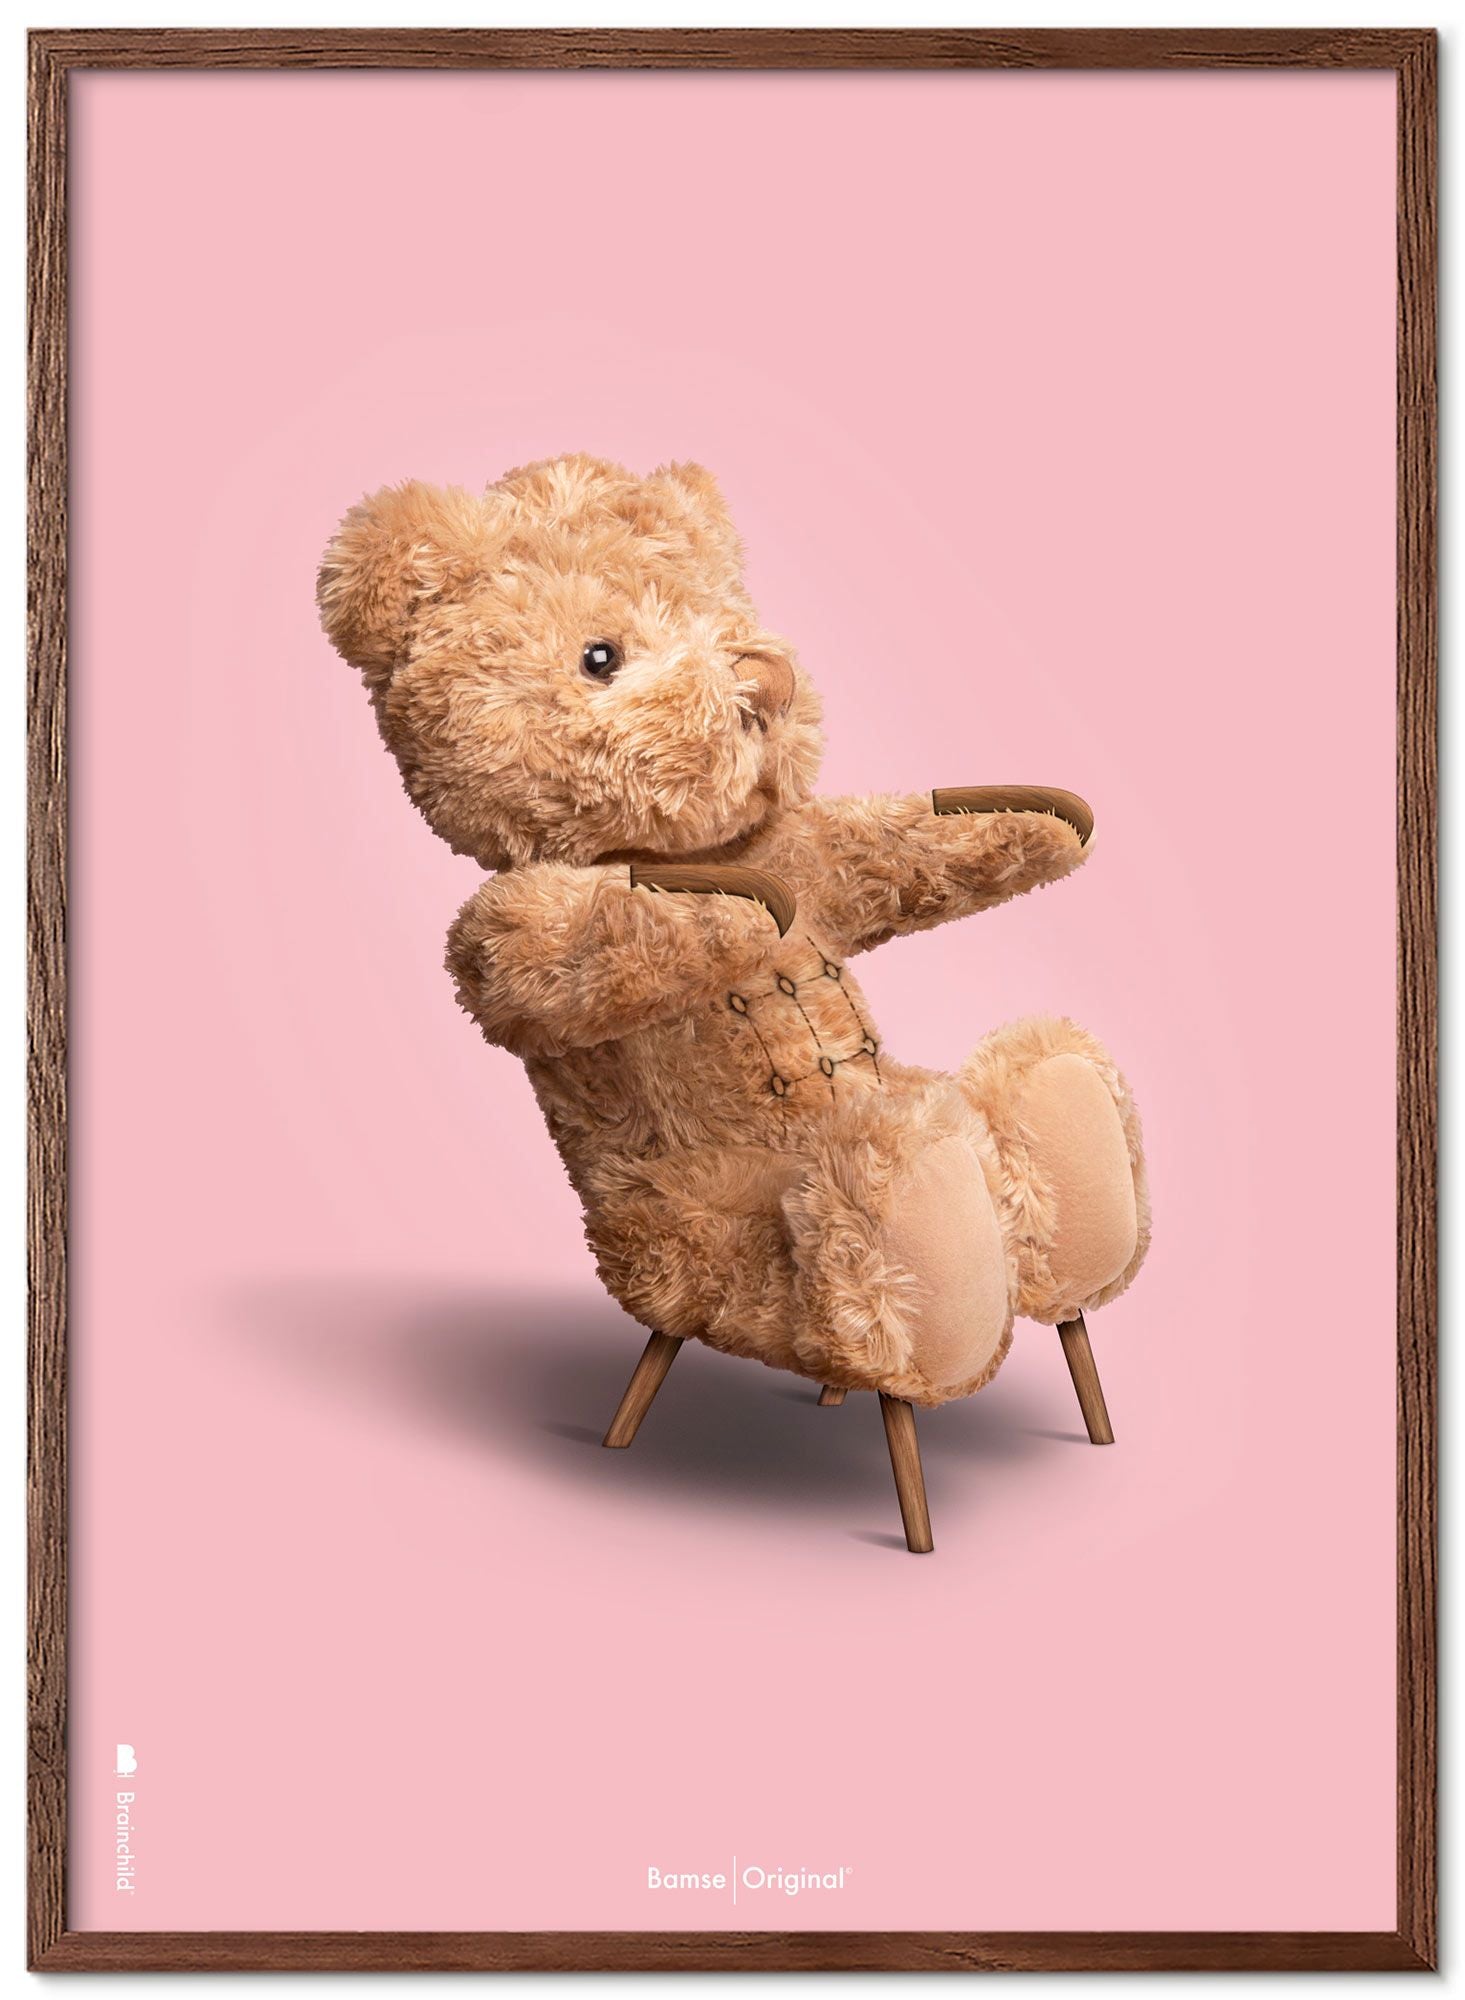 Marco de póster clásico de BrainChild Teddy Bear Hecho de Ram de madera oscura 70x100 cm, fondo rosa